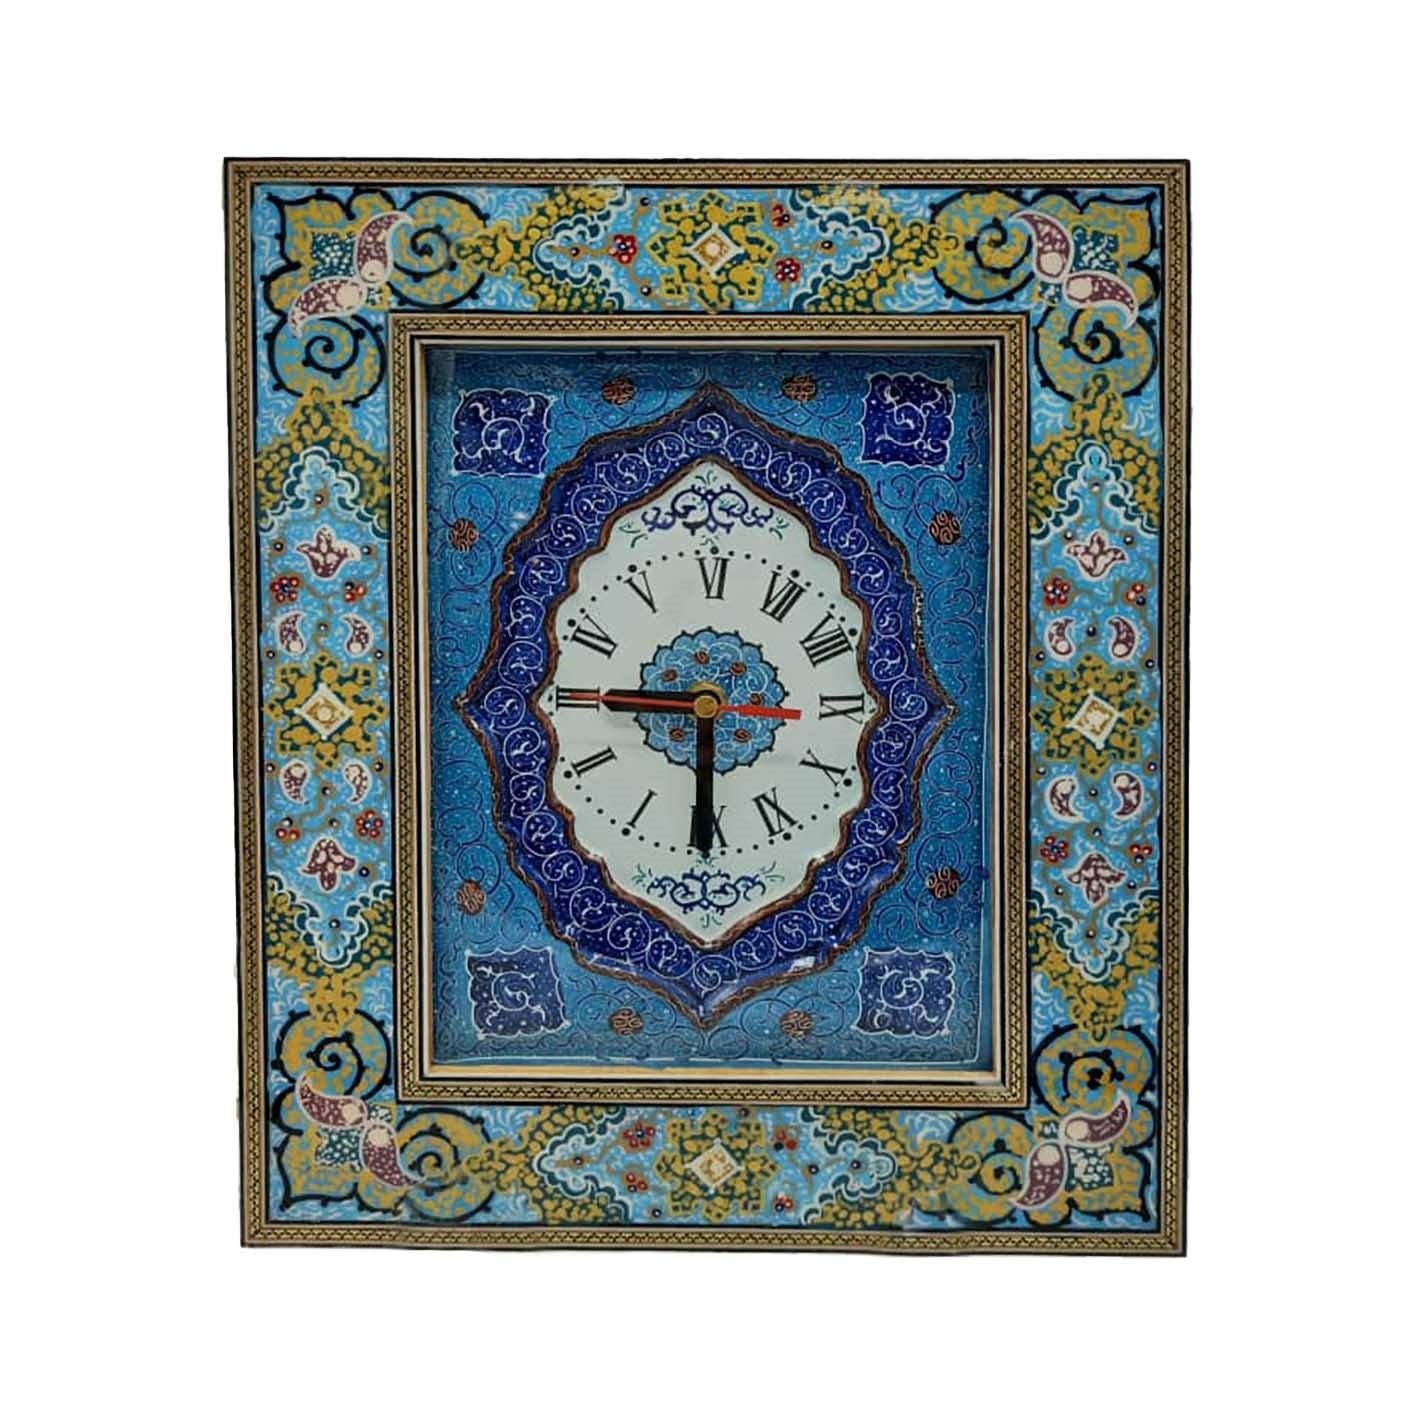 Khatam clock code 0703 , Khatam clock, Inlaid, Khatam clock model, Khatam